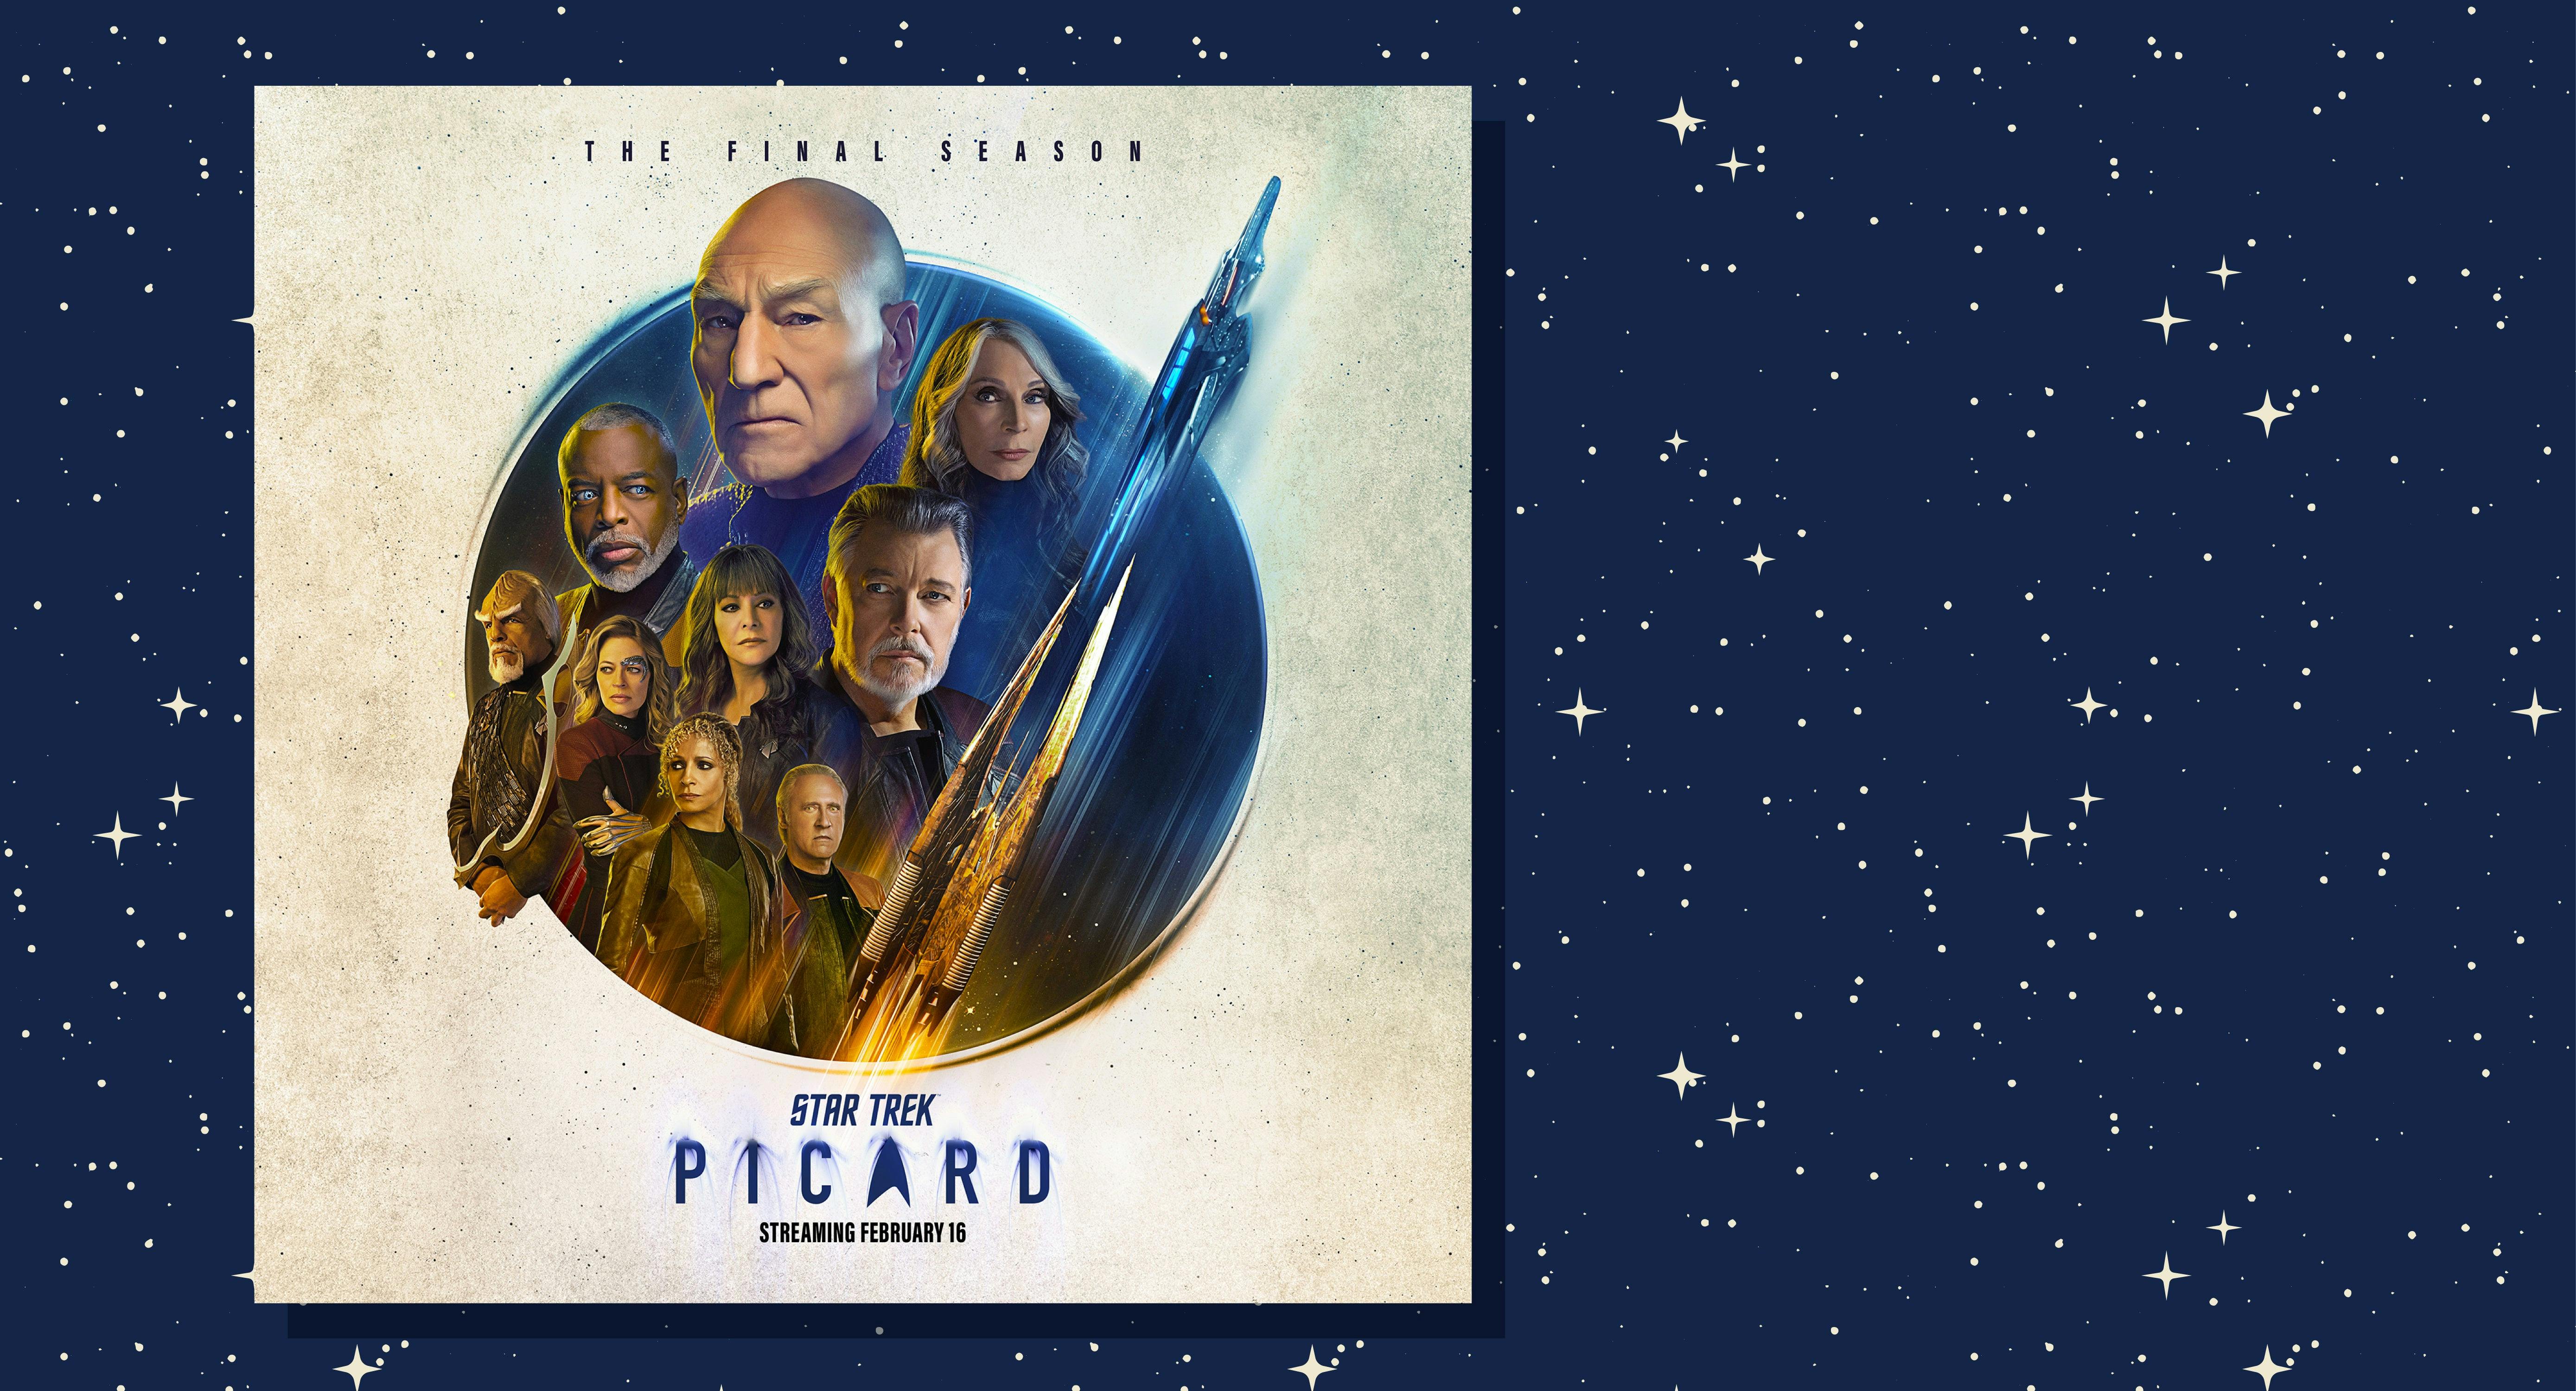 Star Trek: Picard Season 3 teaser art